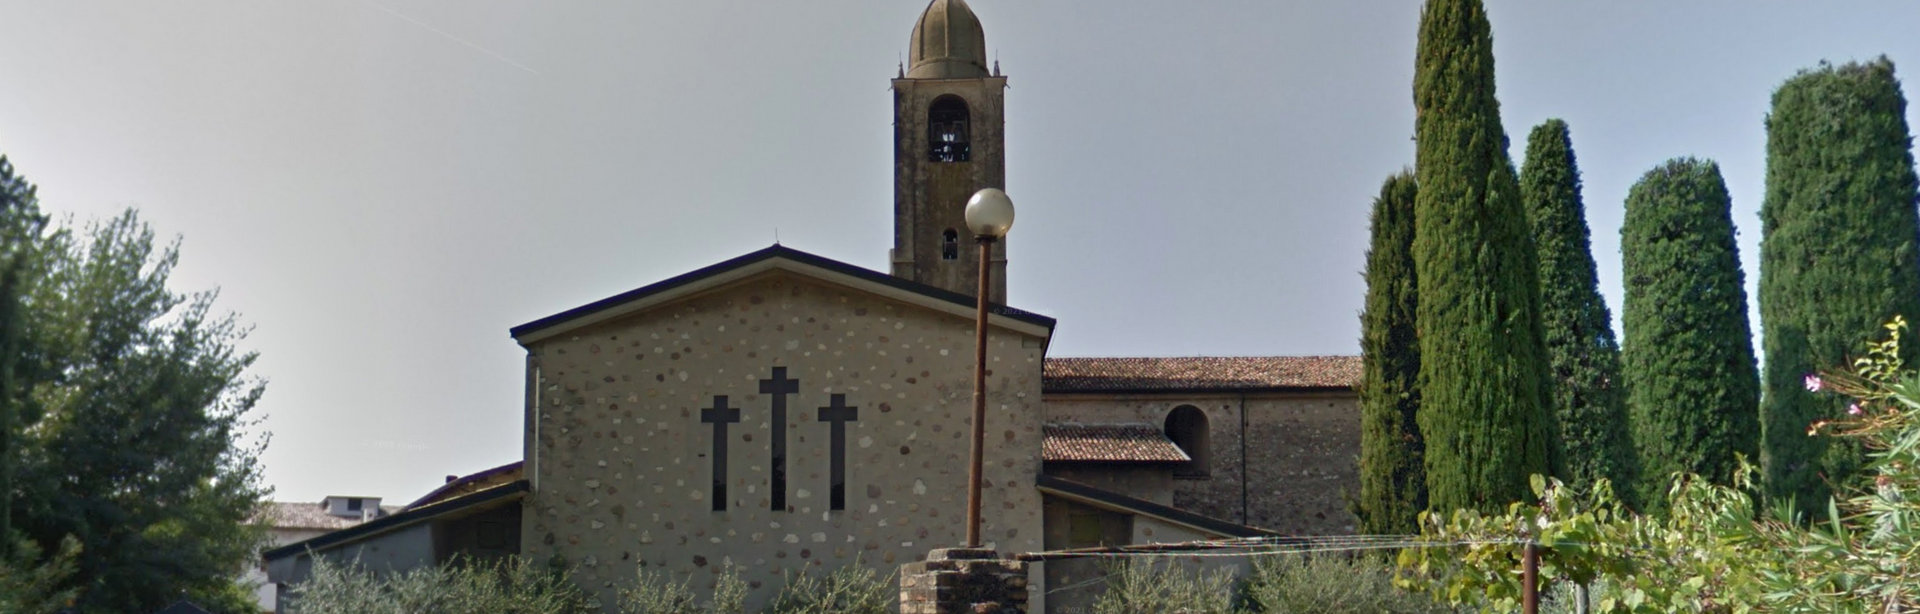 Madonna del Frassino Sanctuary by Google Earth;